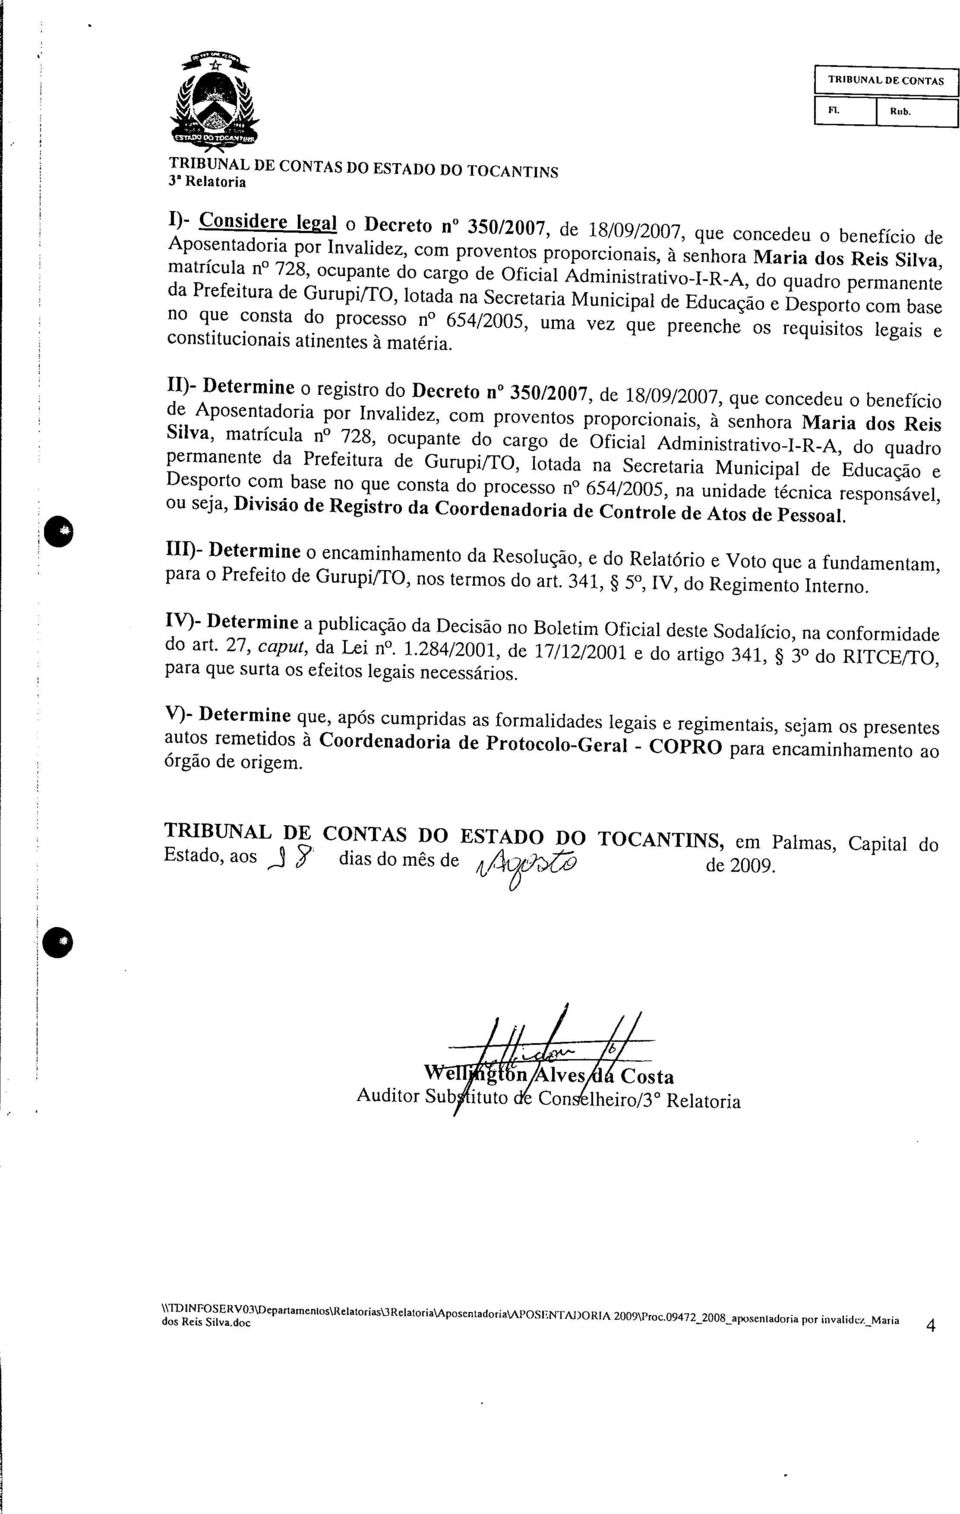 H g ; II)- Determine o registro do Decreto n 350/2007, de 18/09/2007, que concedeu o benefício ; de Aposentadoria por Invalidez, com proventos proporcionais, à senhora Maria dos Reis Silva, matricula